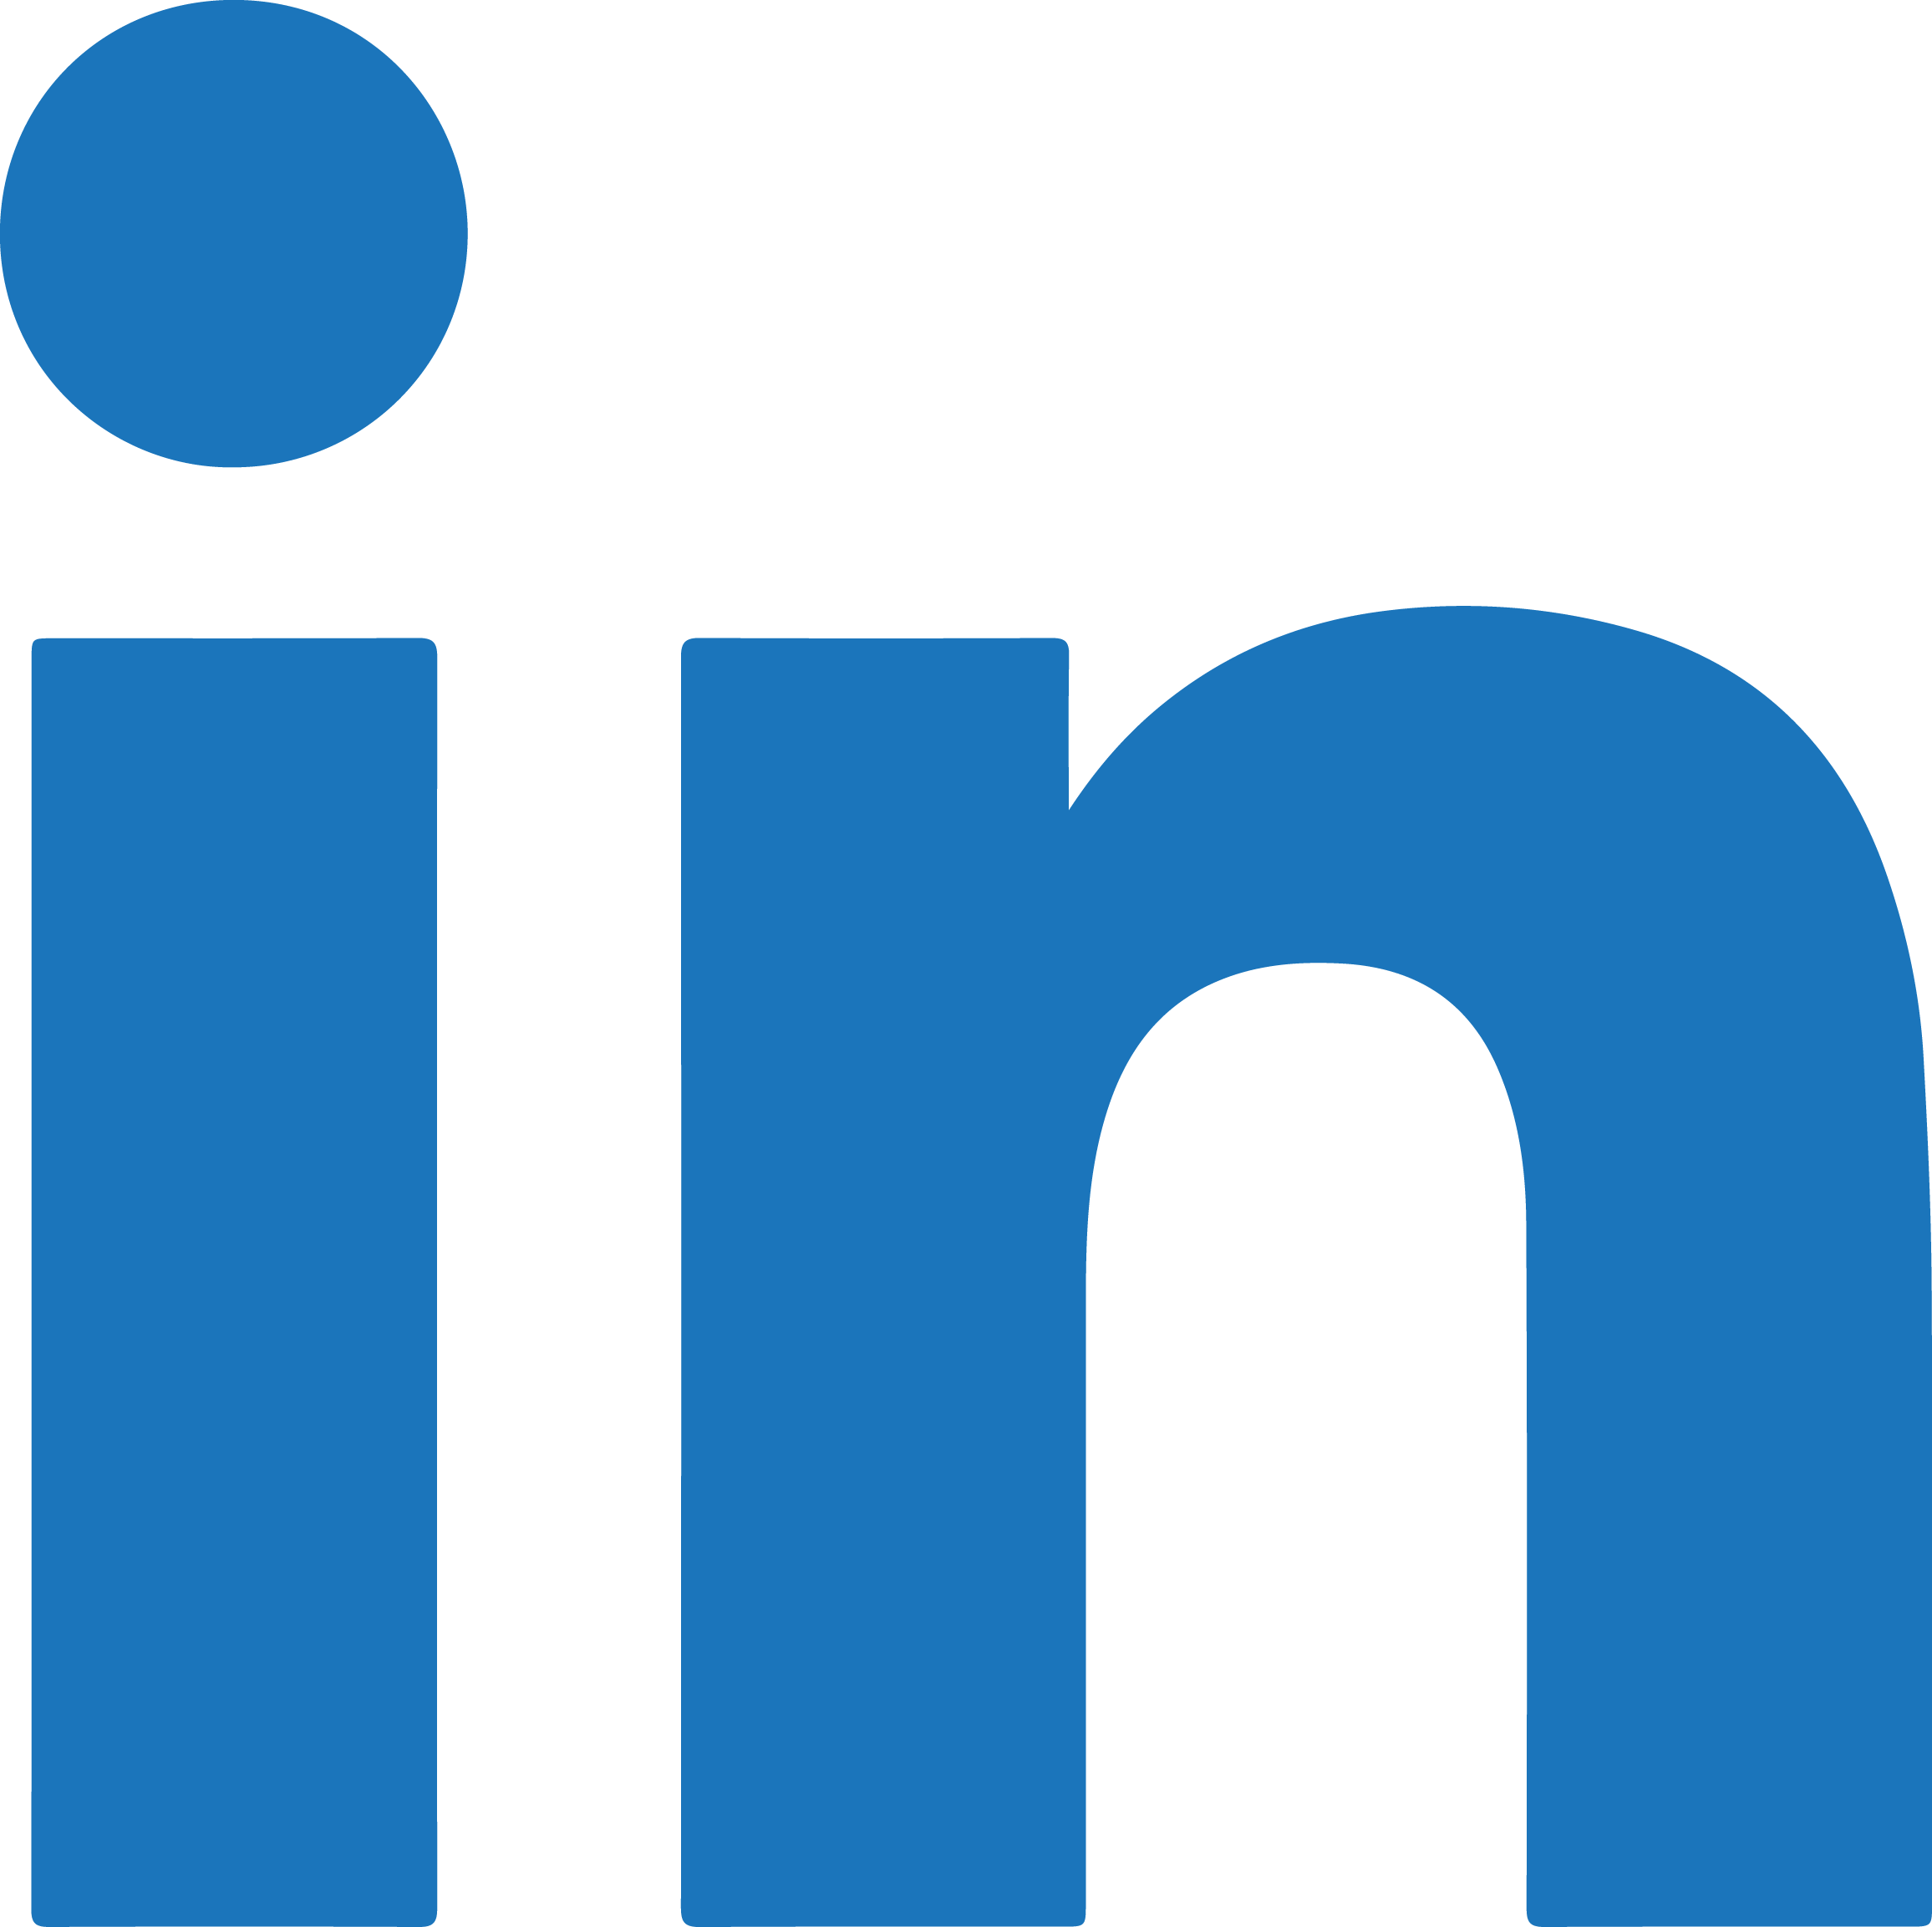 Linkd in Logo - Facebook And Linkedin Vector Logo Png Images